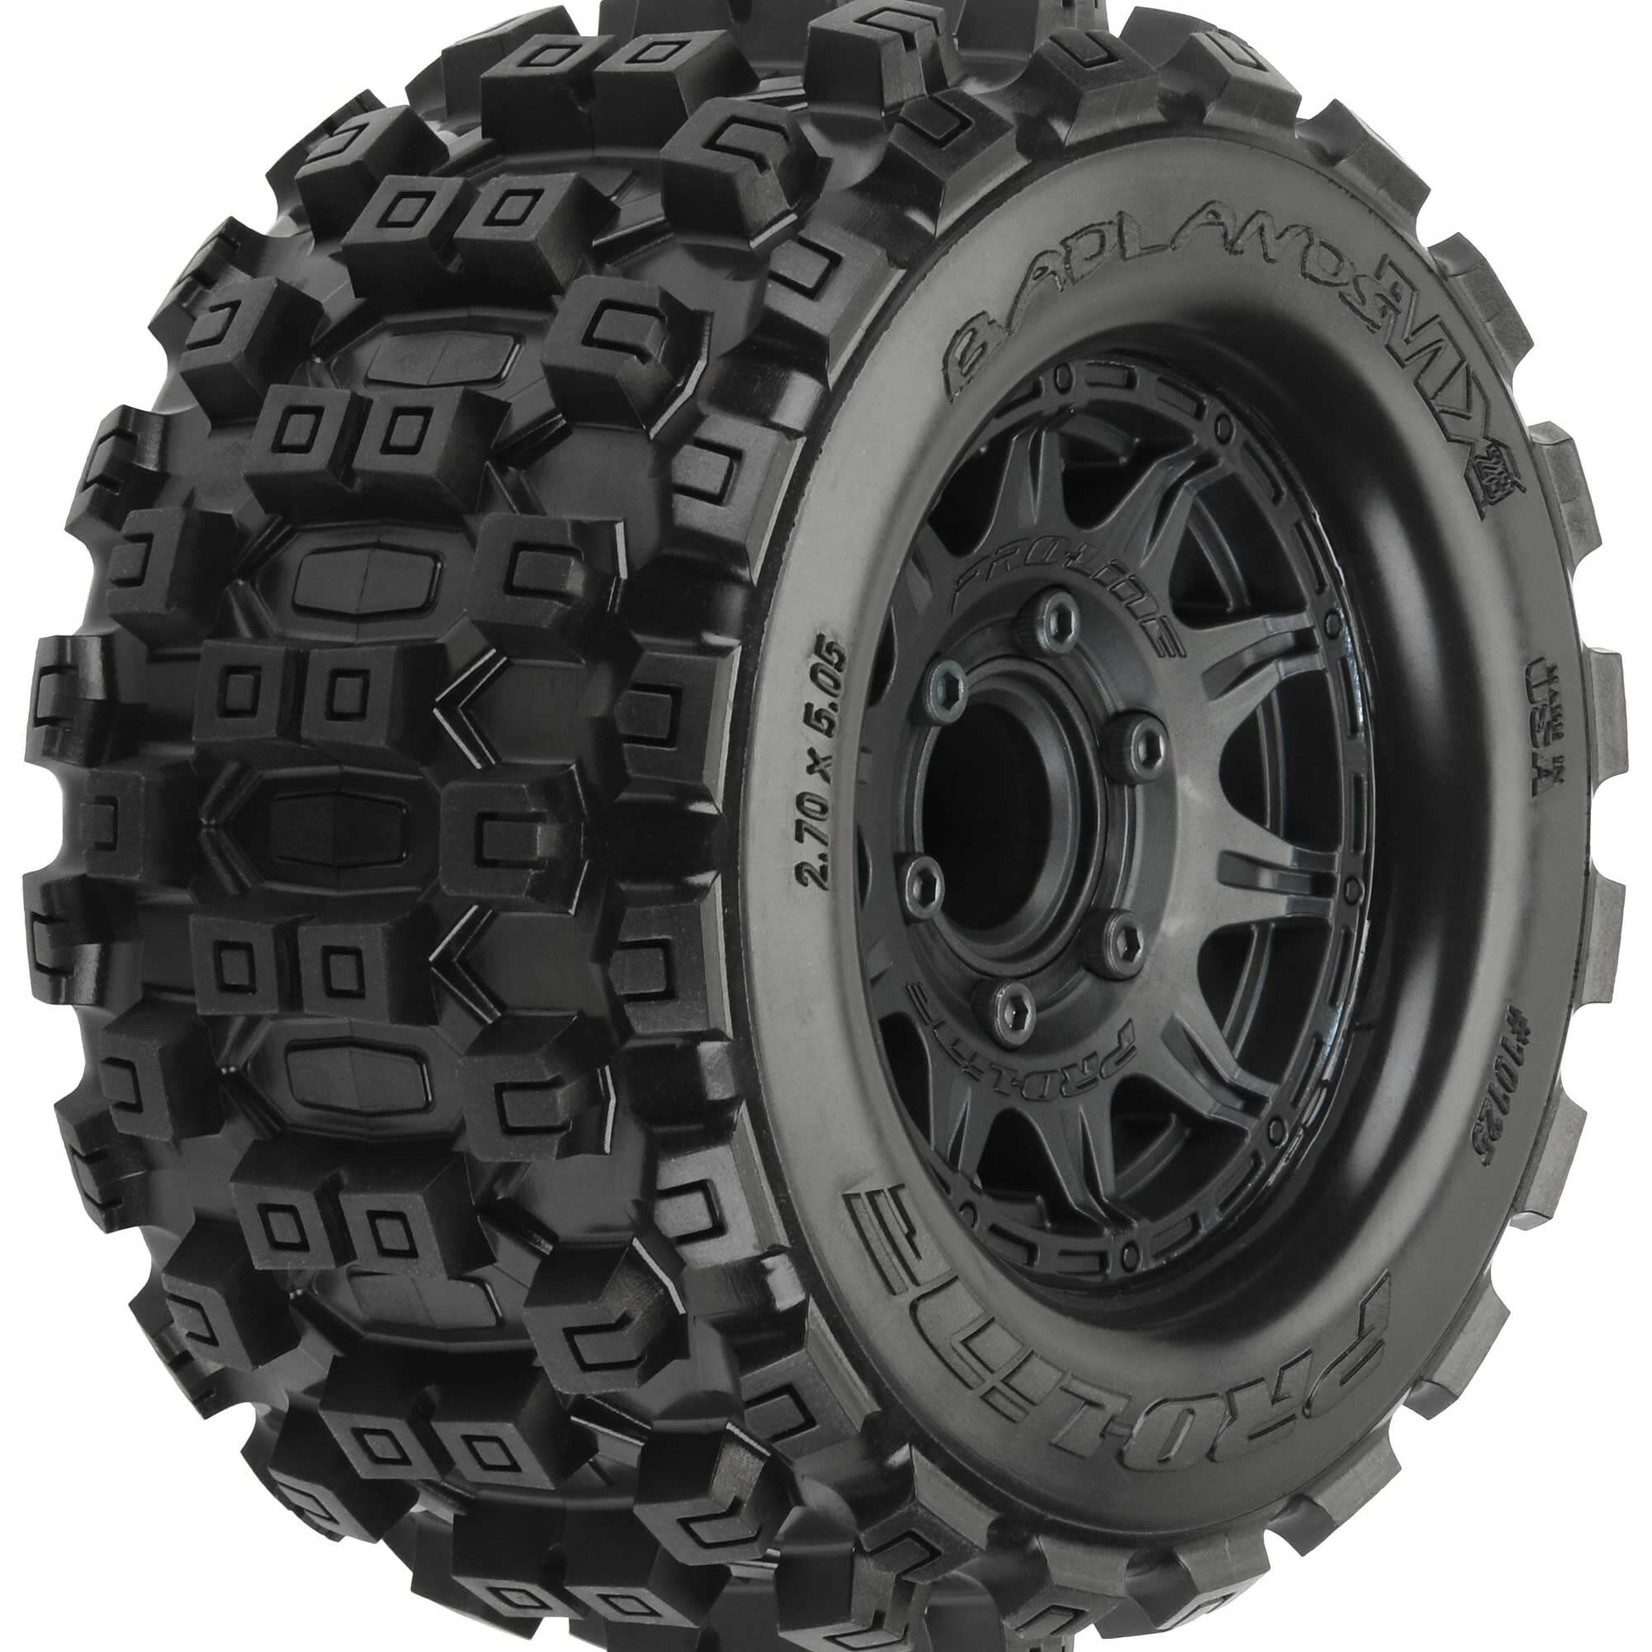 Pro-Line ProLine 1/10 Badlands MX28 Fr/Rr 2.8" MT Tires Mounted 12mm Blk Raid (2) #10125-10